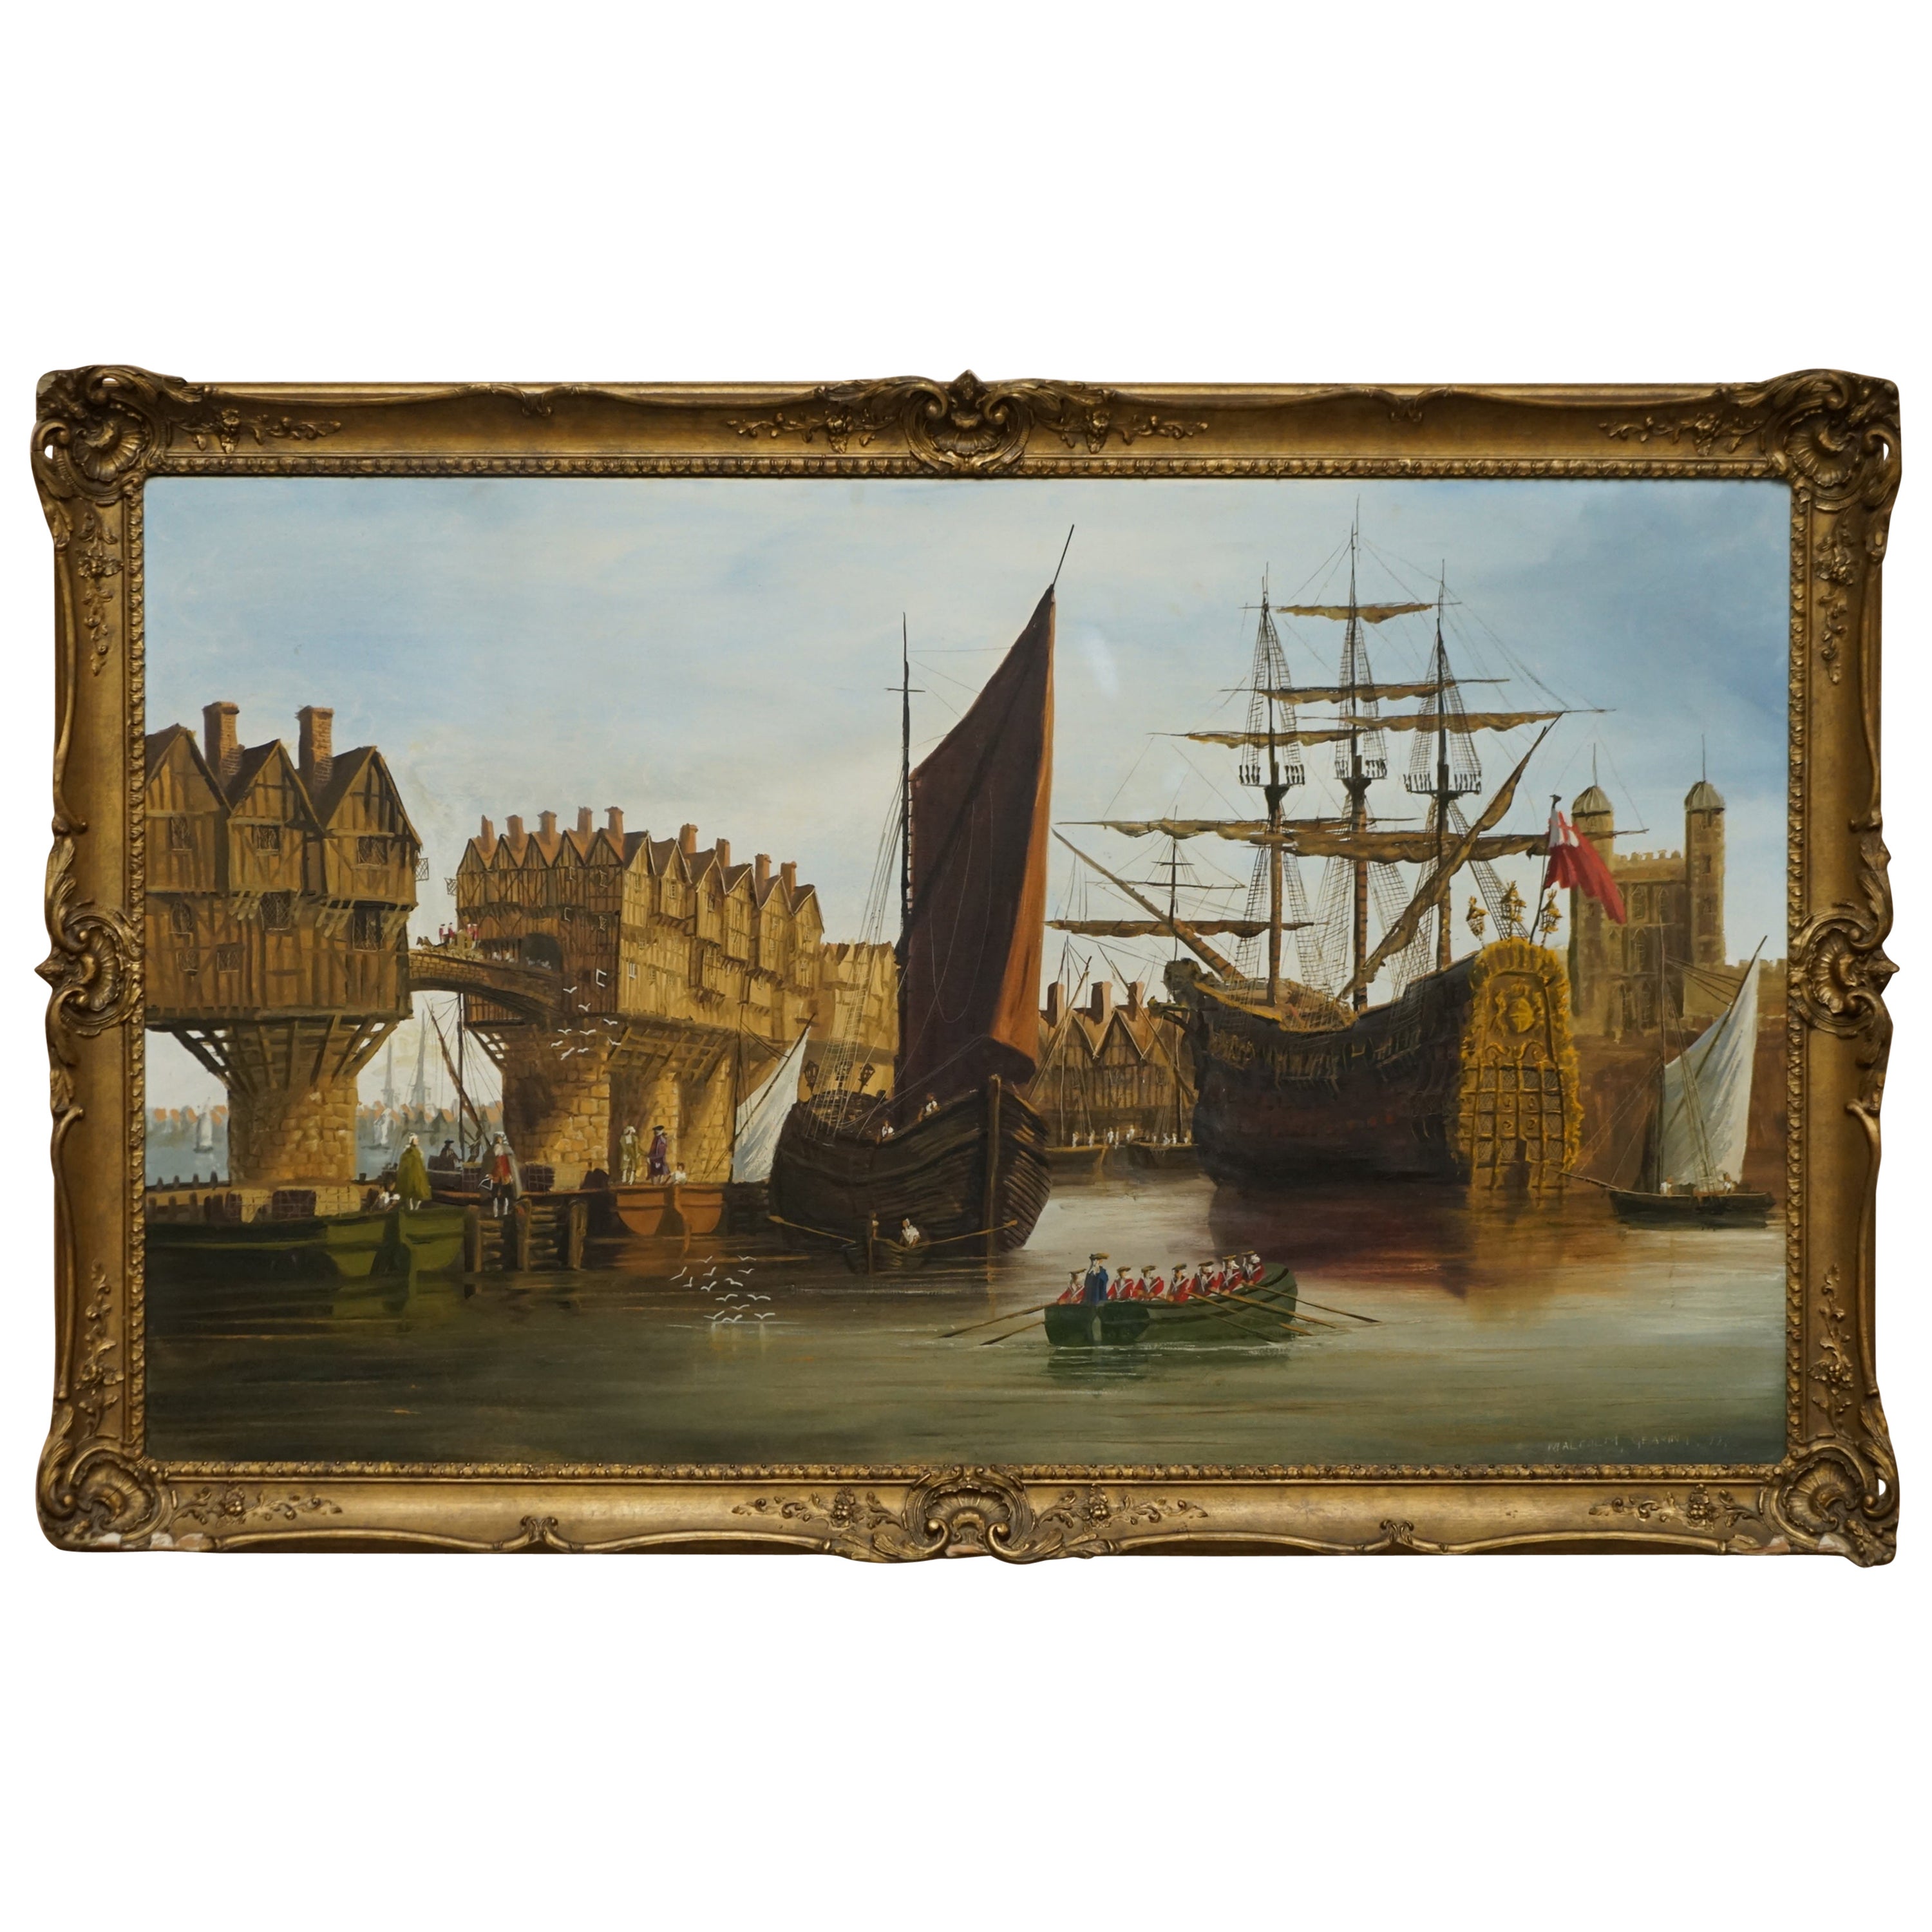 Très grande huile décorative sur toile d'une scène navale victorienne sur la Tamise